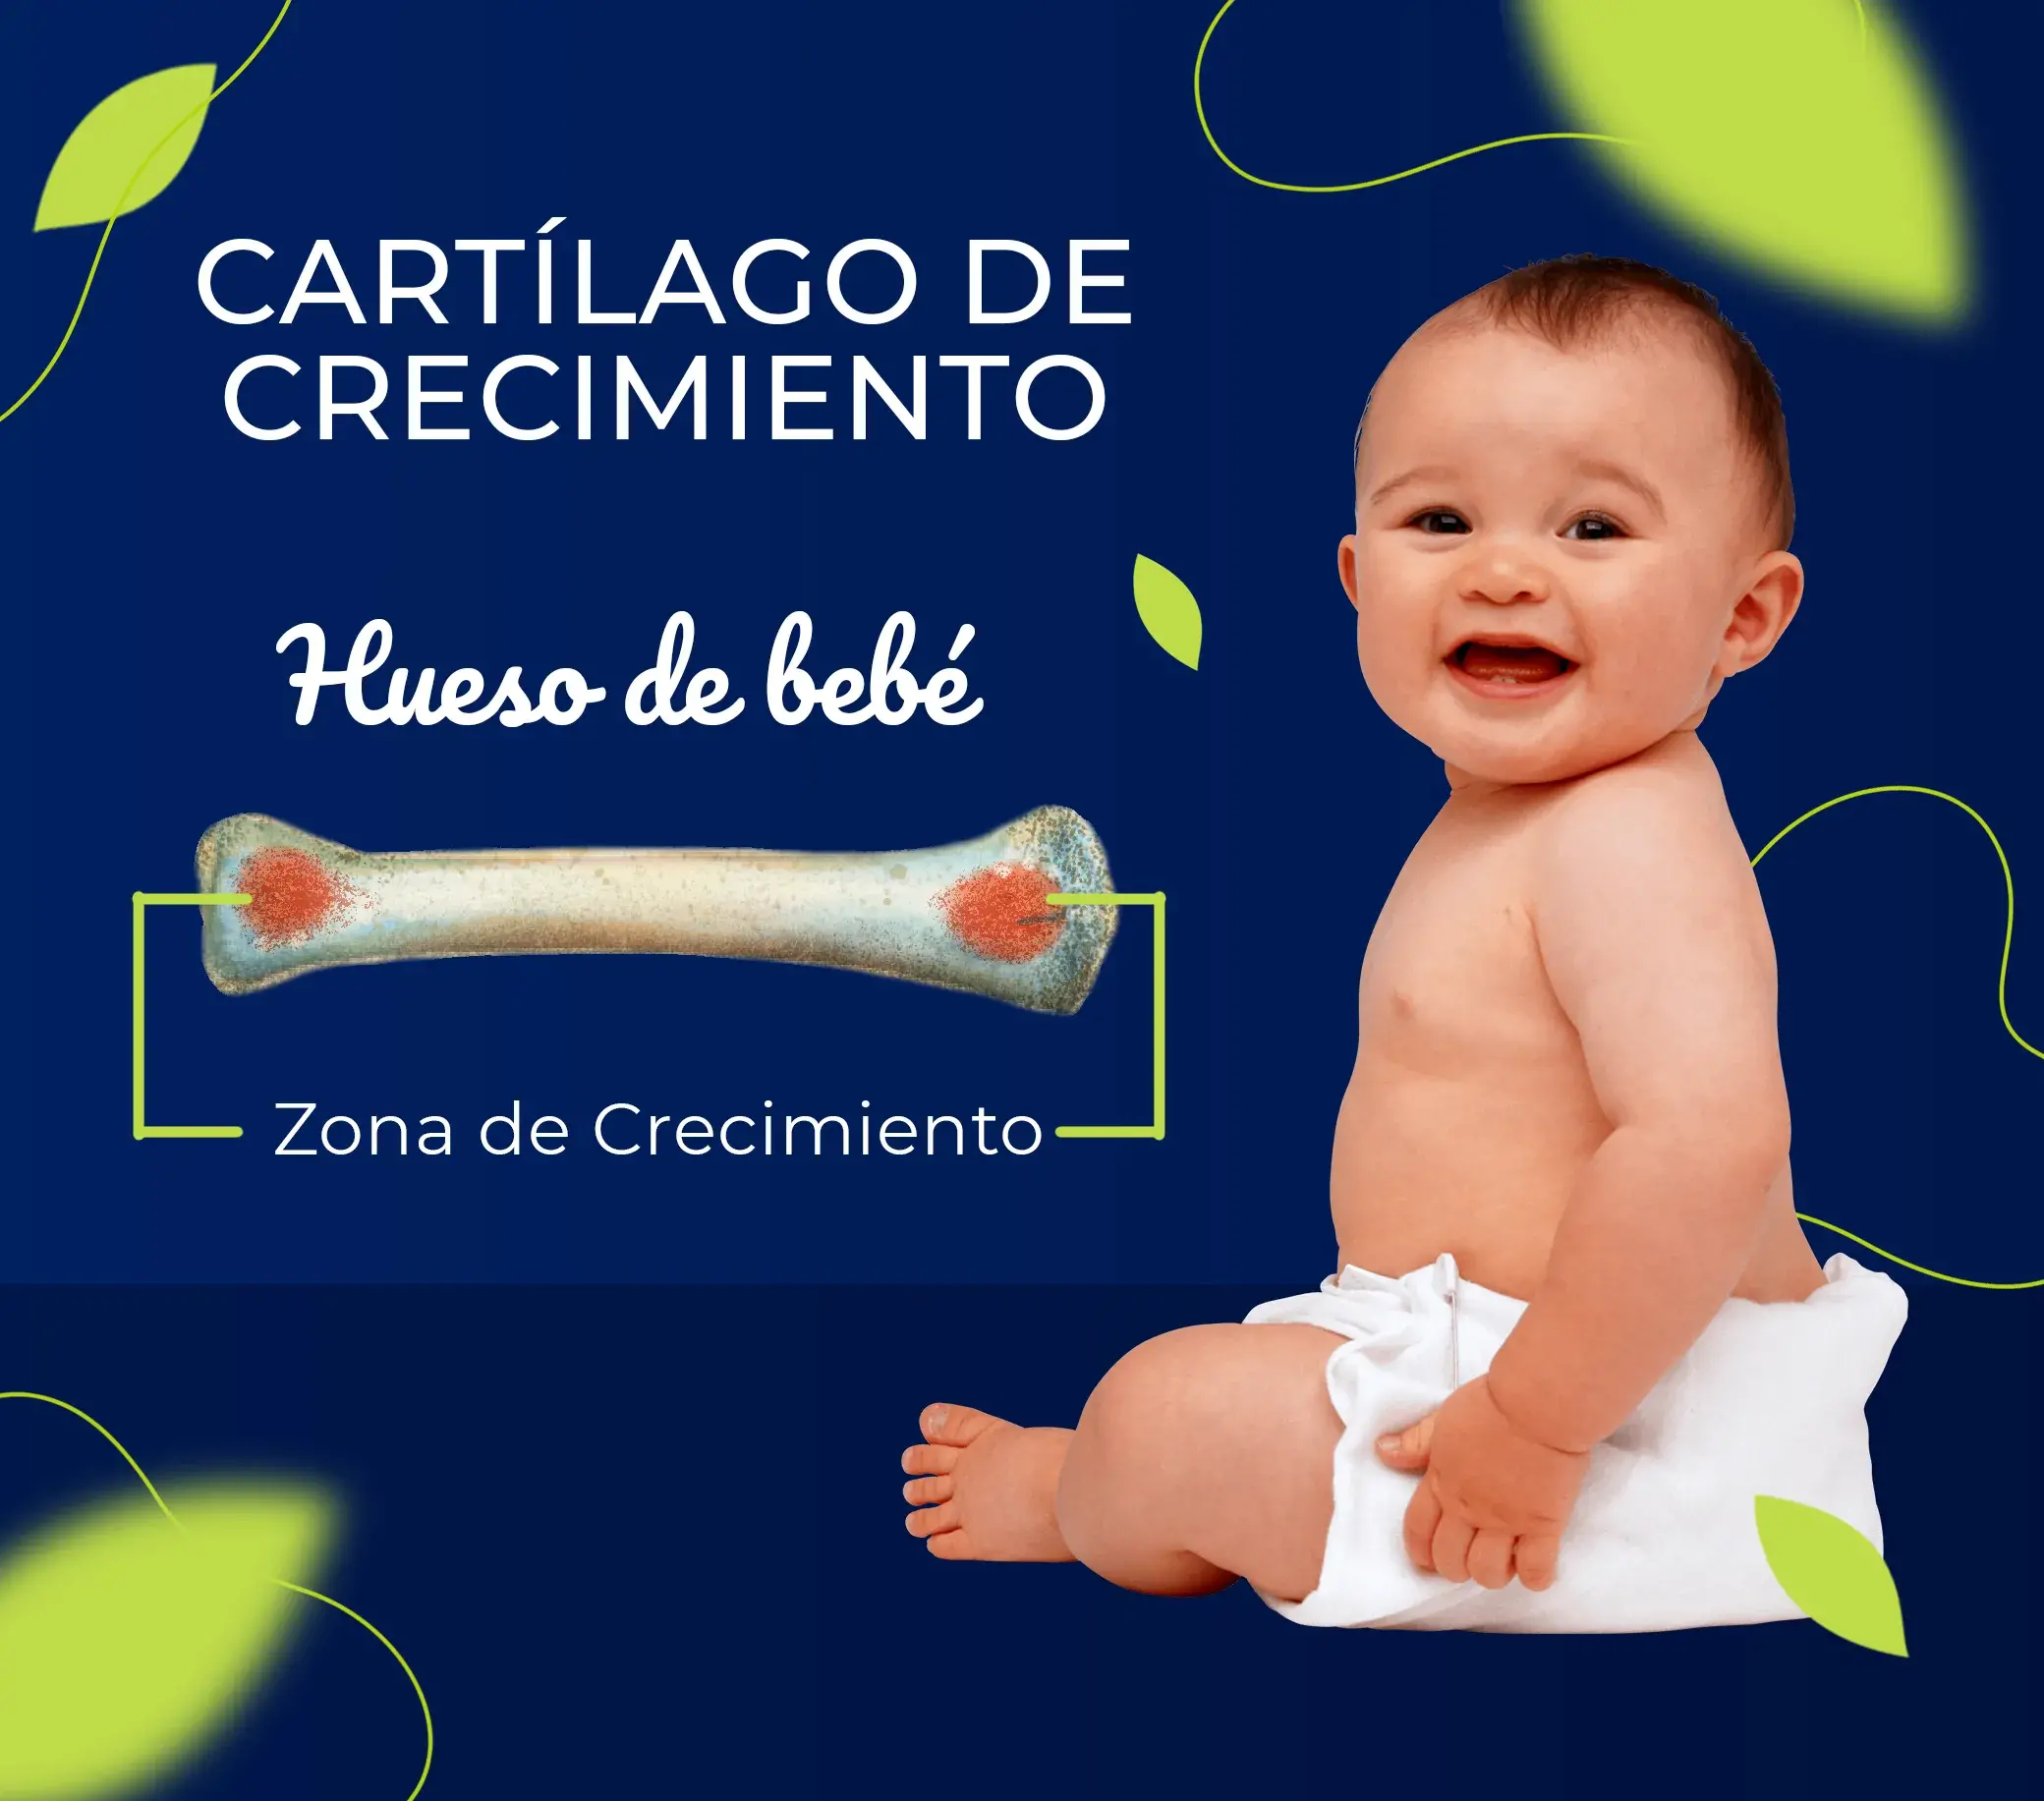 El cartilago del bebé tiene una zona de crecimiento.